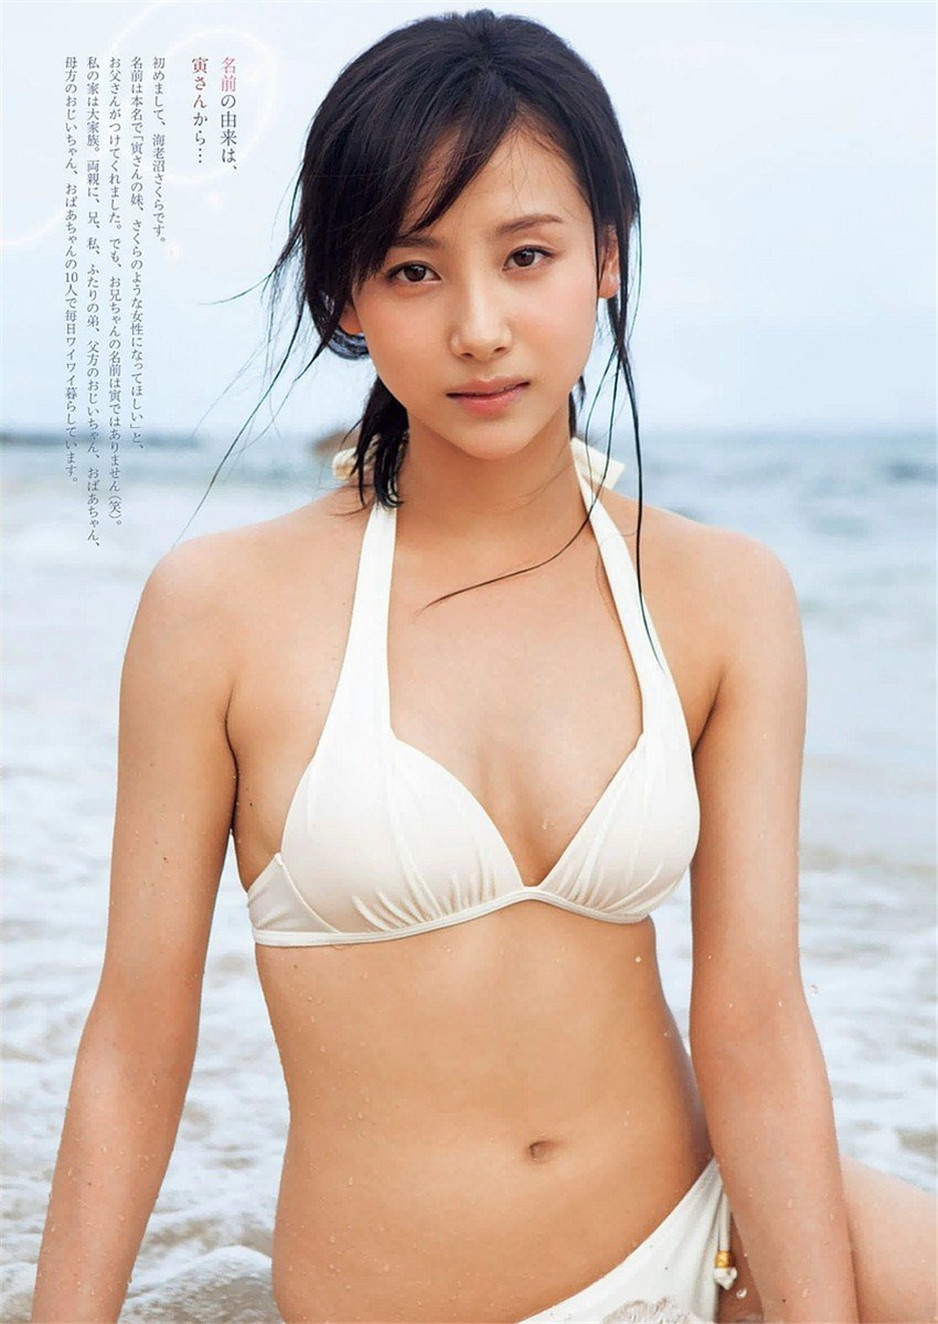 日本泳装美少女海老沼樱高清写真